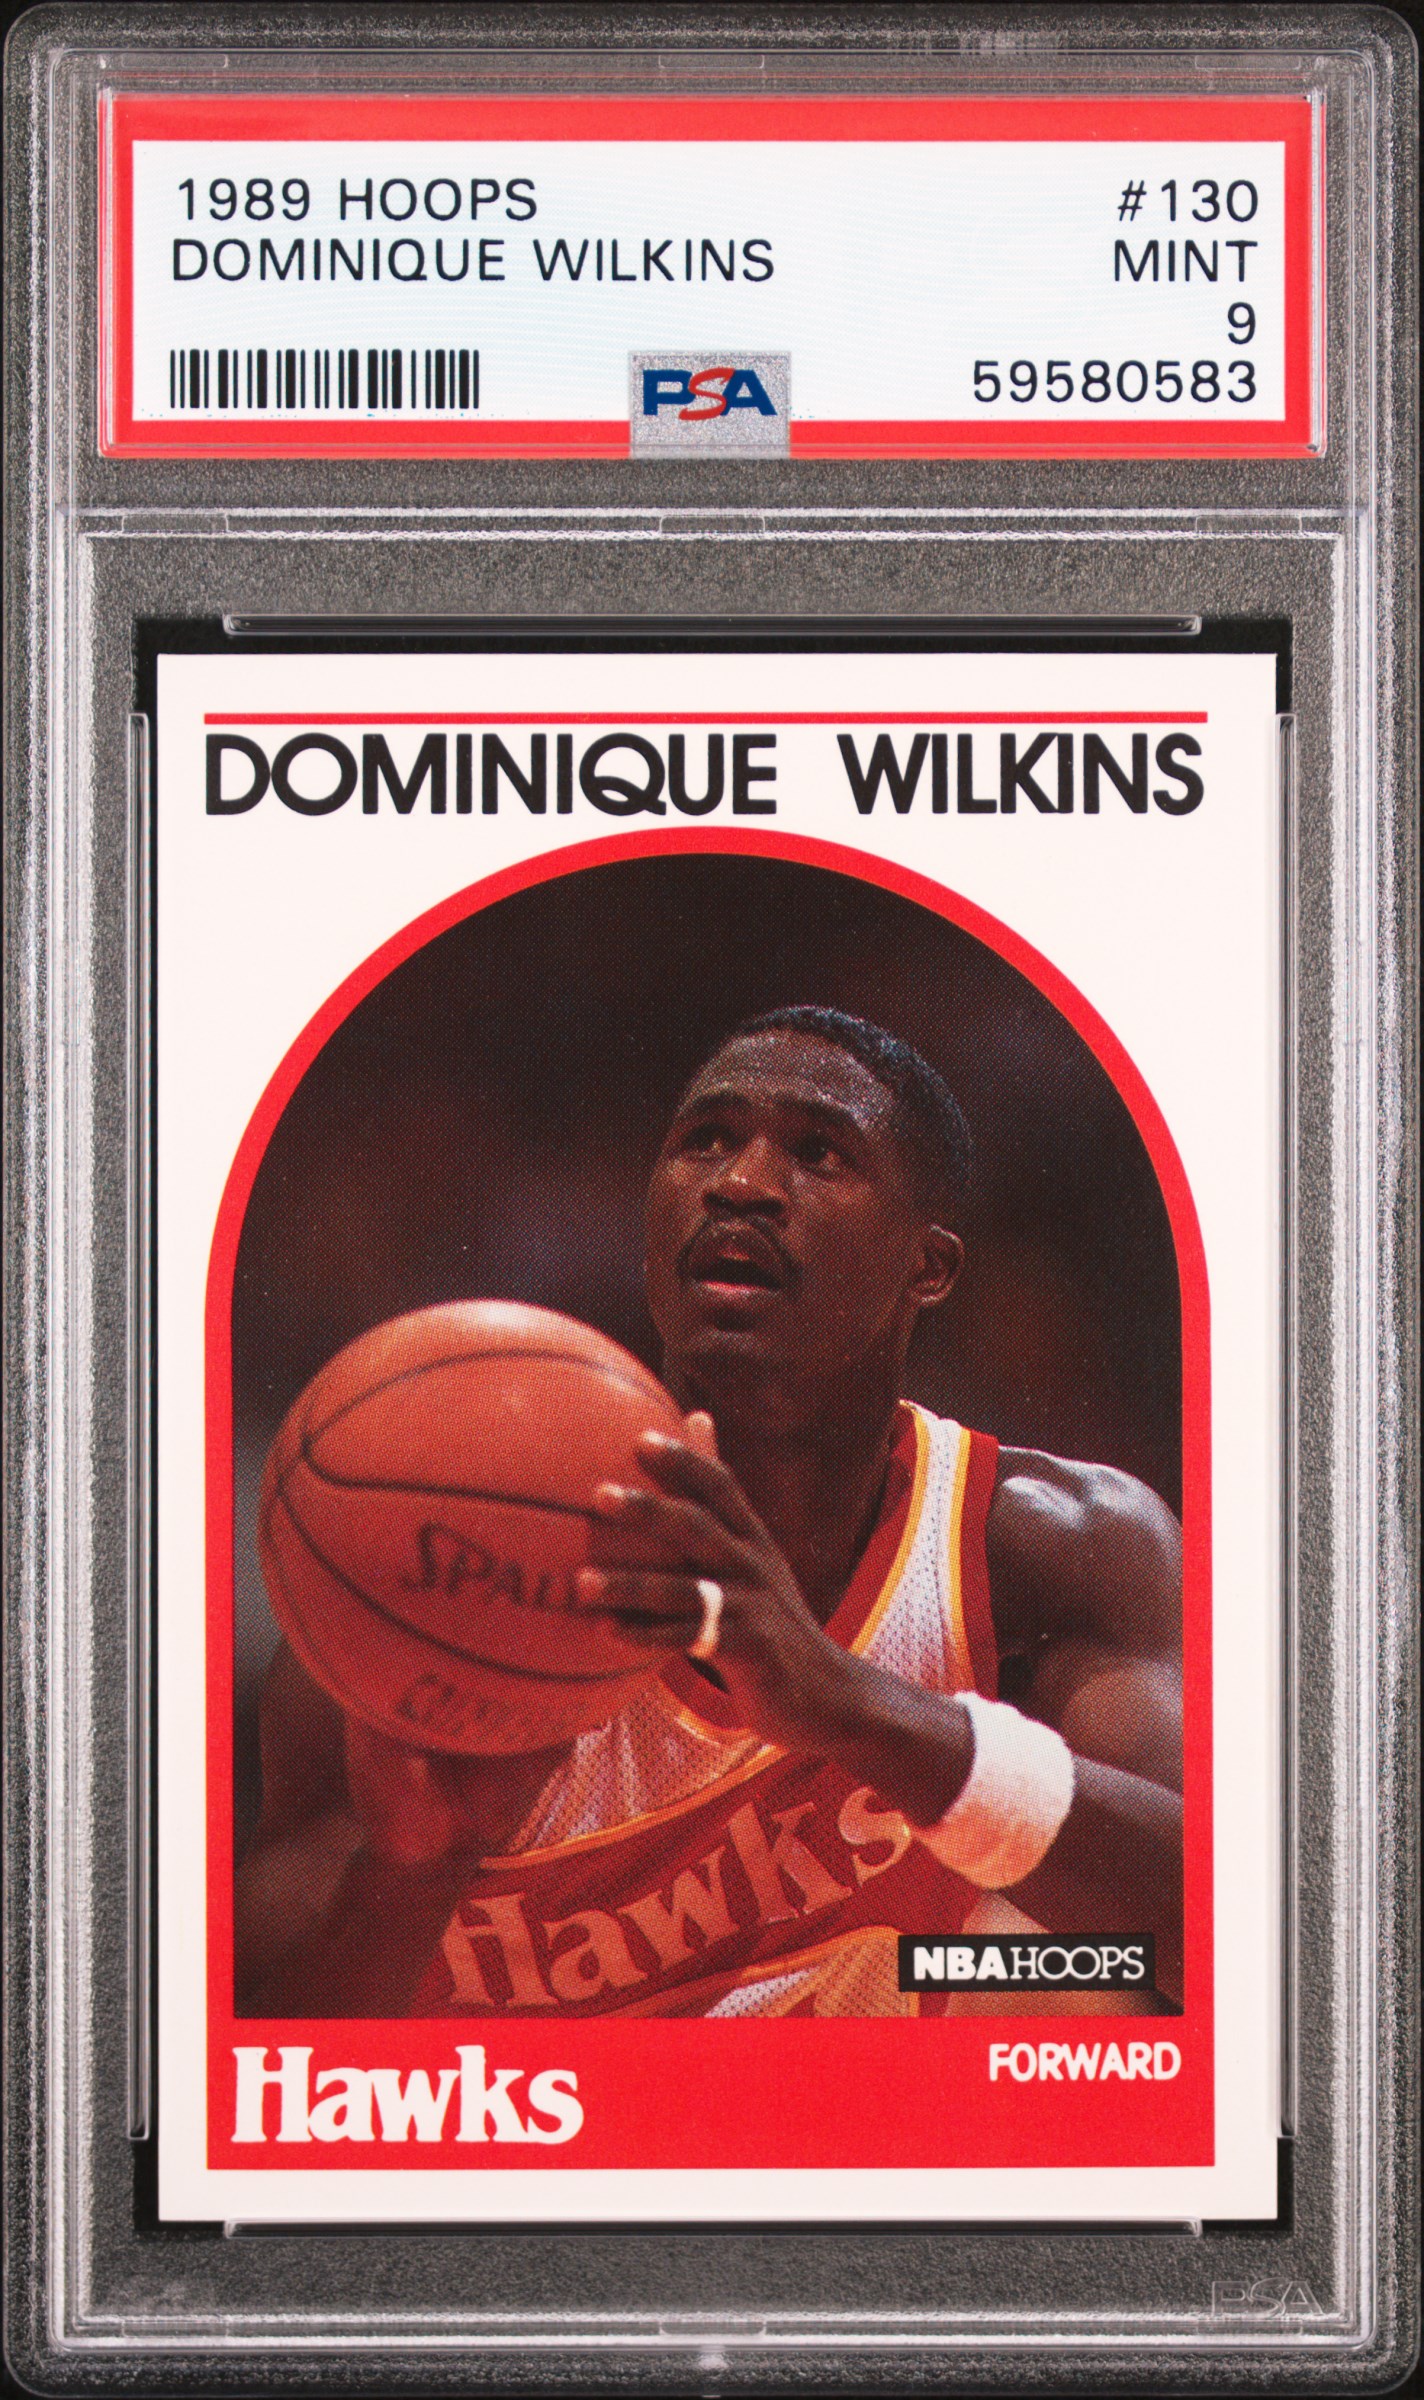 1989 Hoops #130 Dominique Wilkins PSA 9